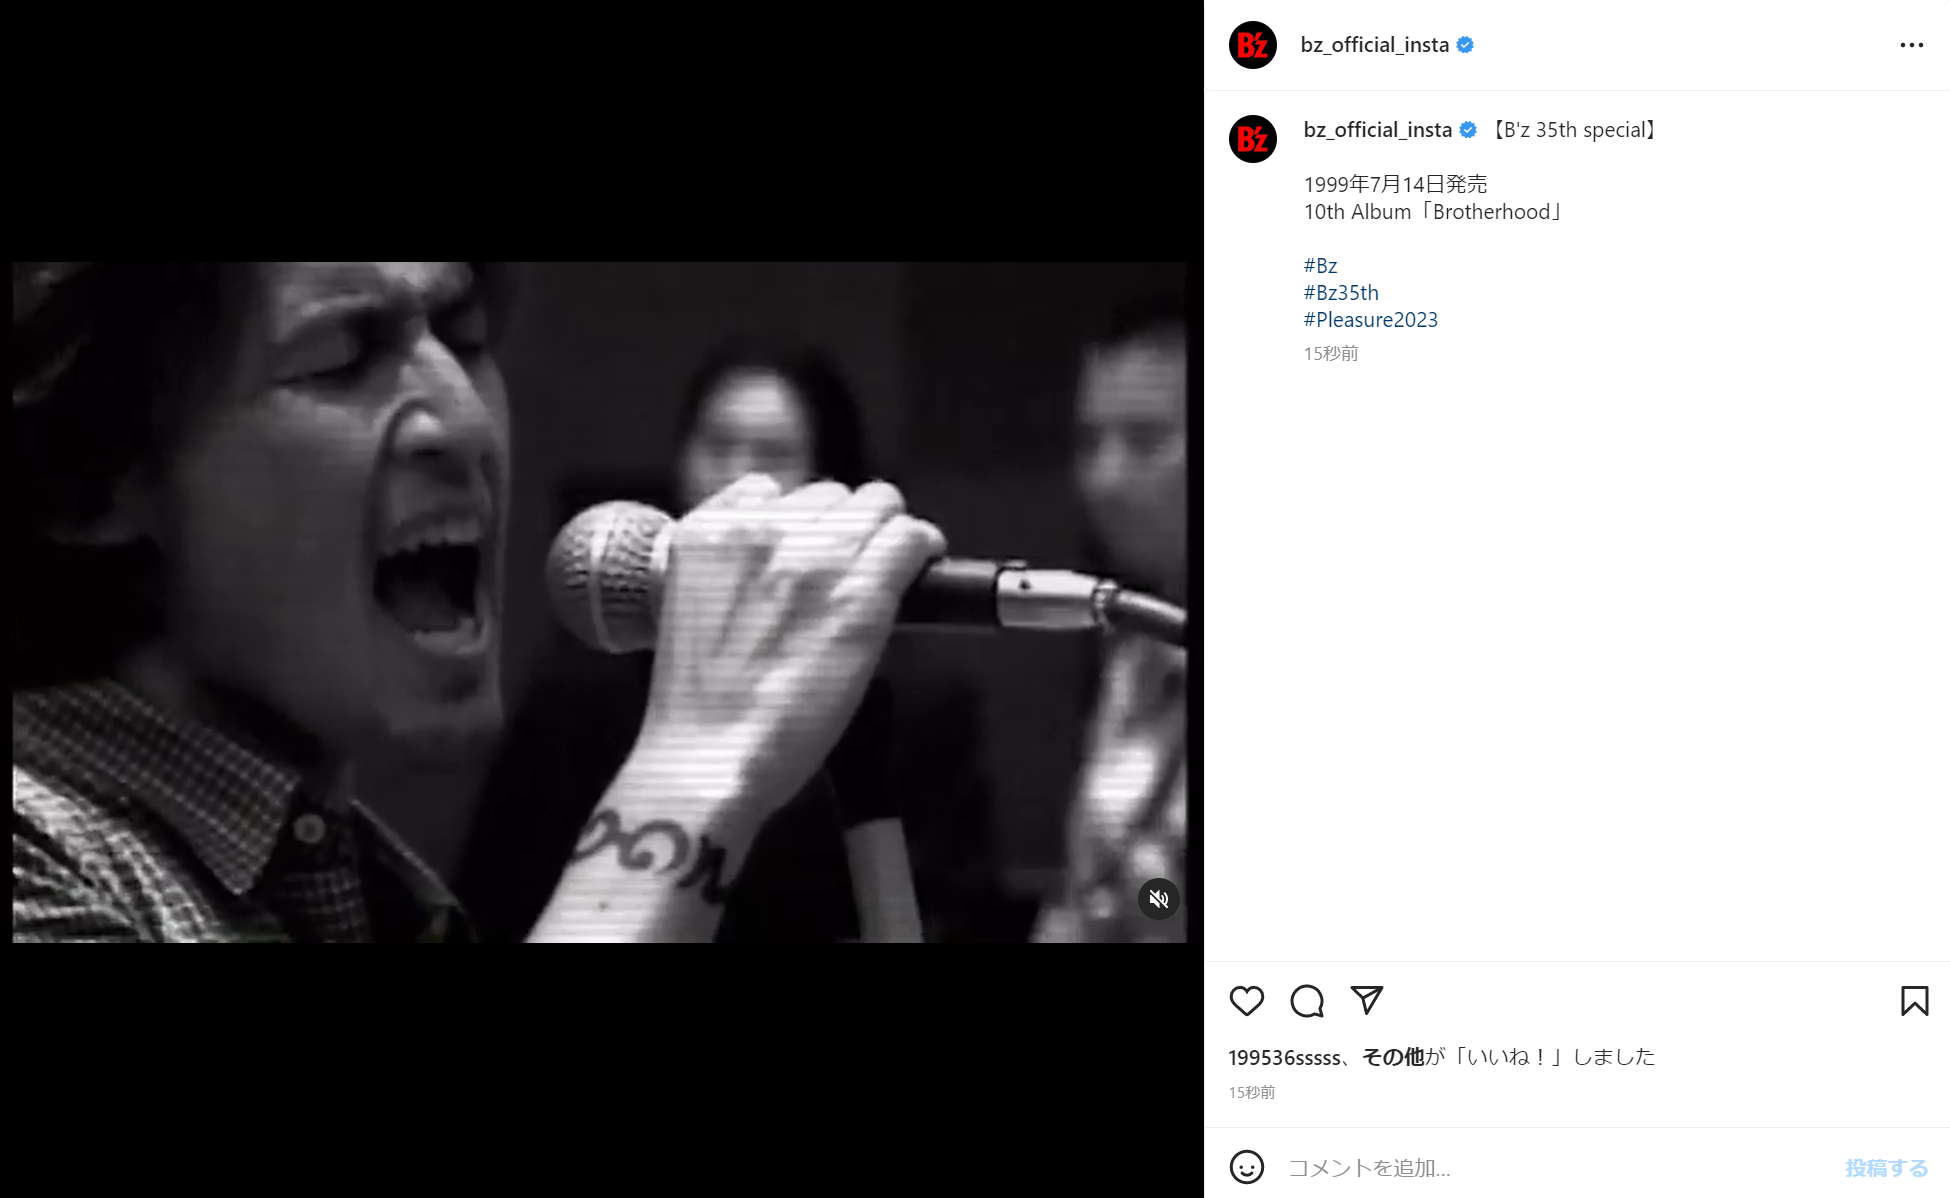 公式Instagramで公開されたB'z『Brotherhood』のミュージックビデオ